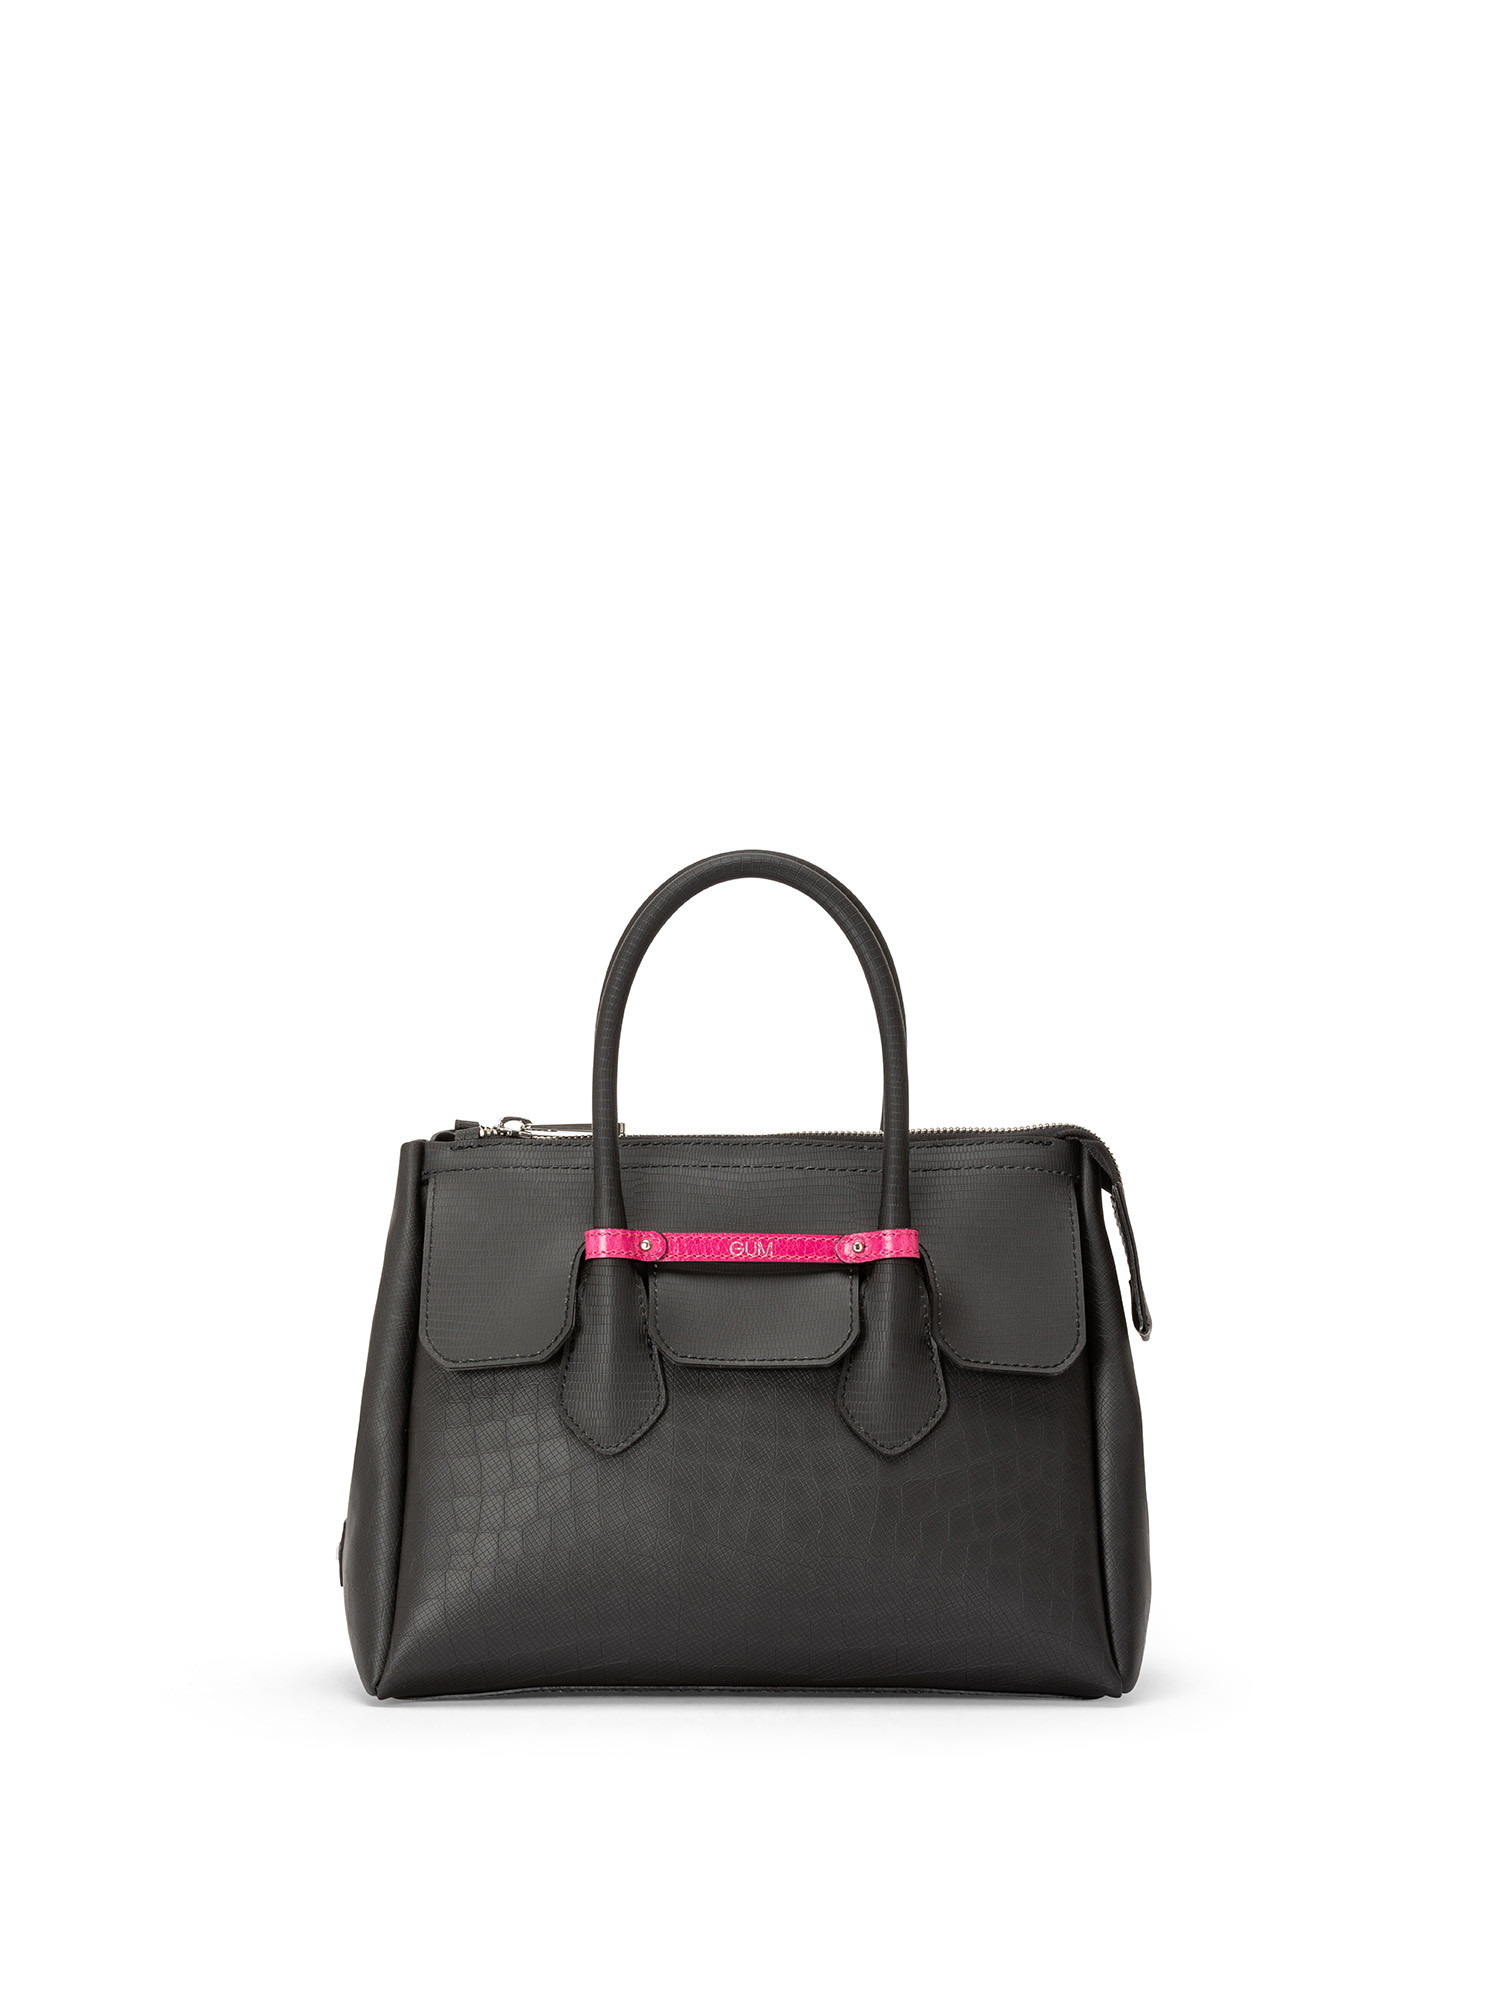 Medium Bomb handbag, Black, large image number 0